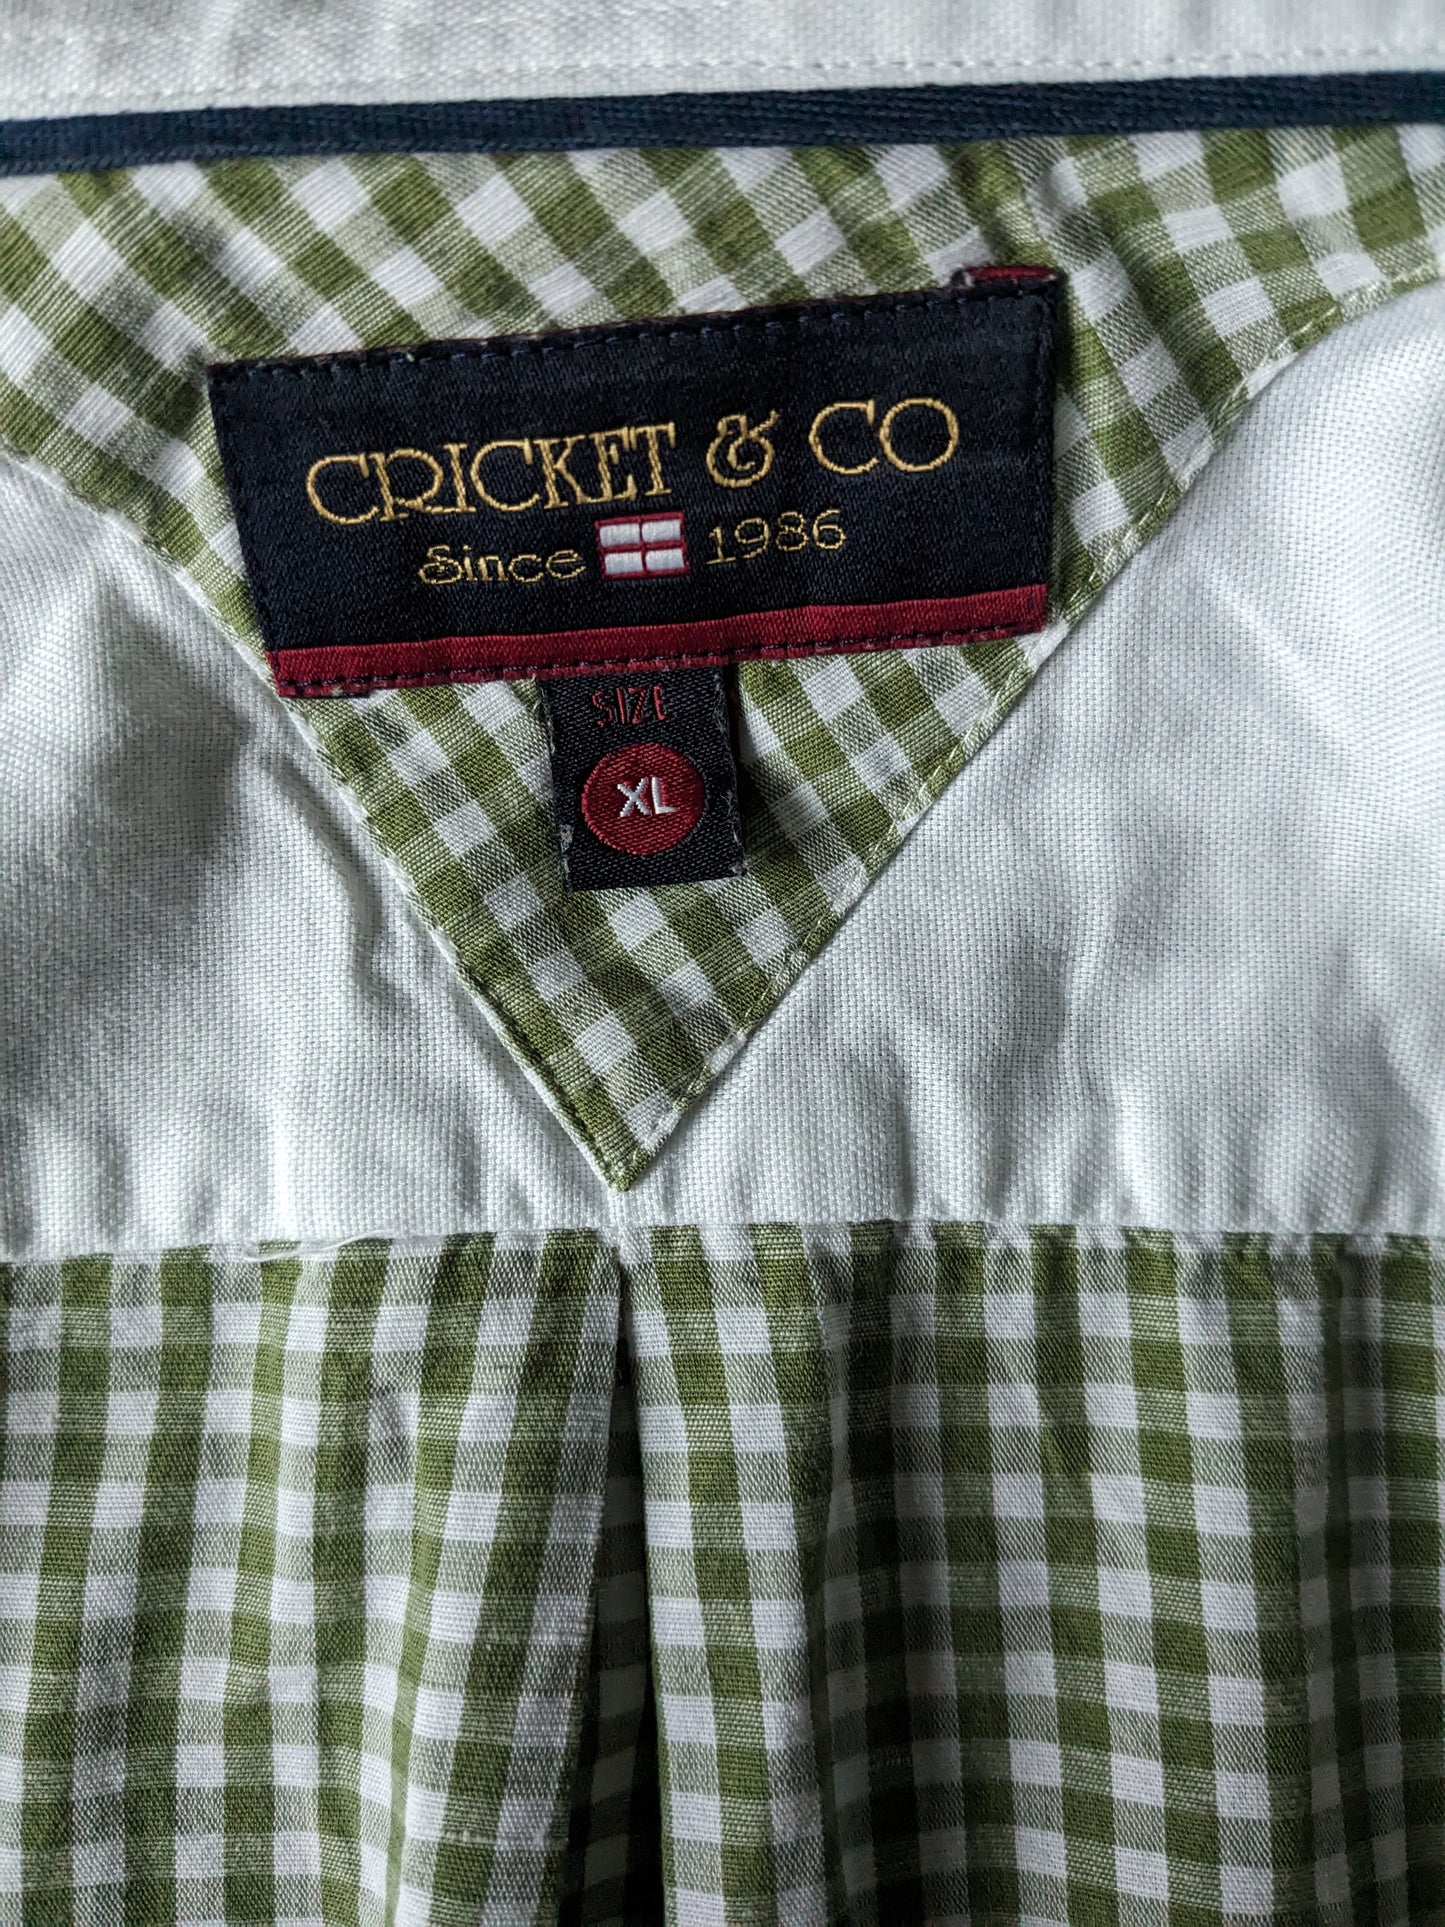 Cricket & Co -Shirt. Grün weiß kariert. Größe xl.